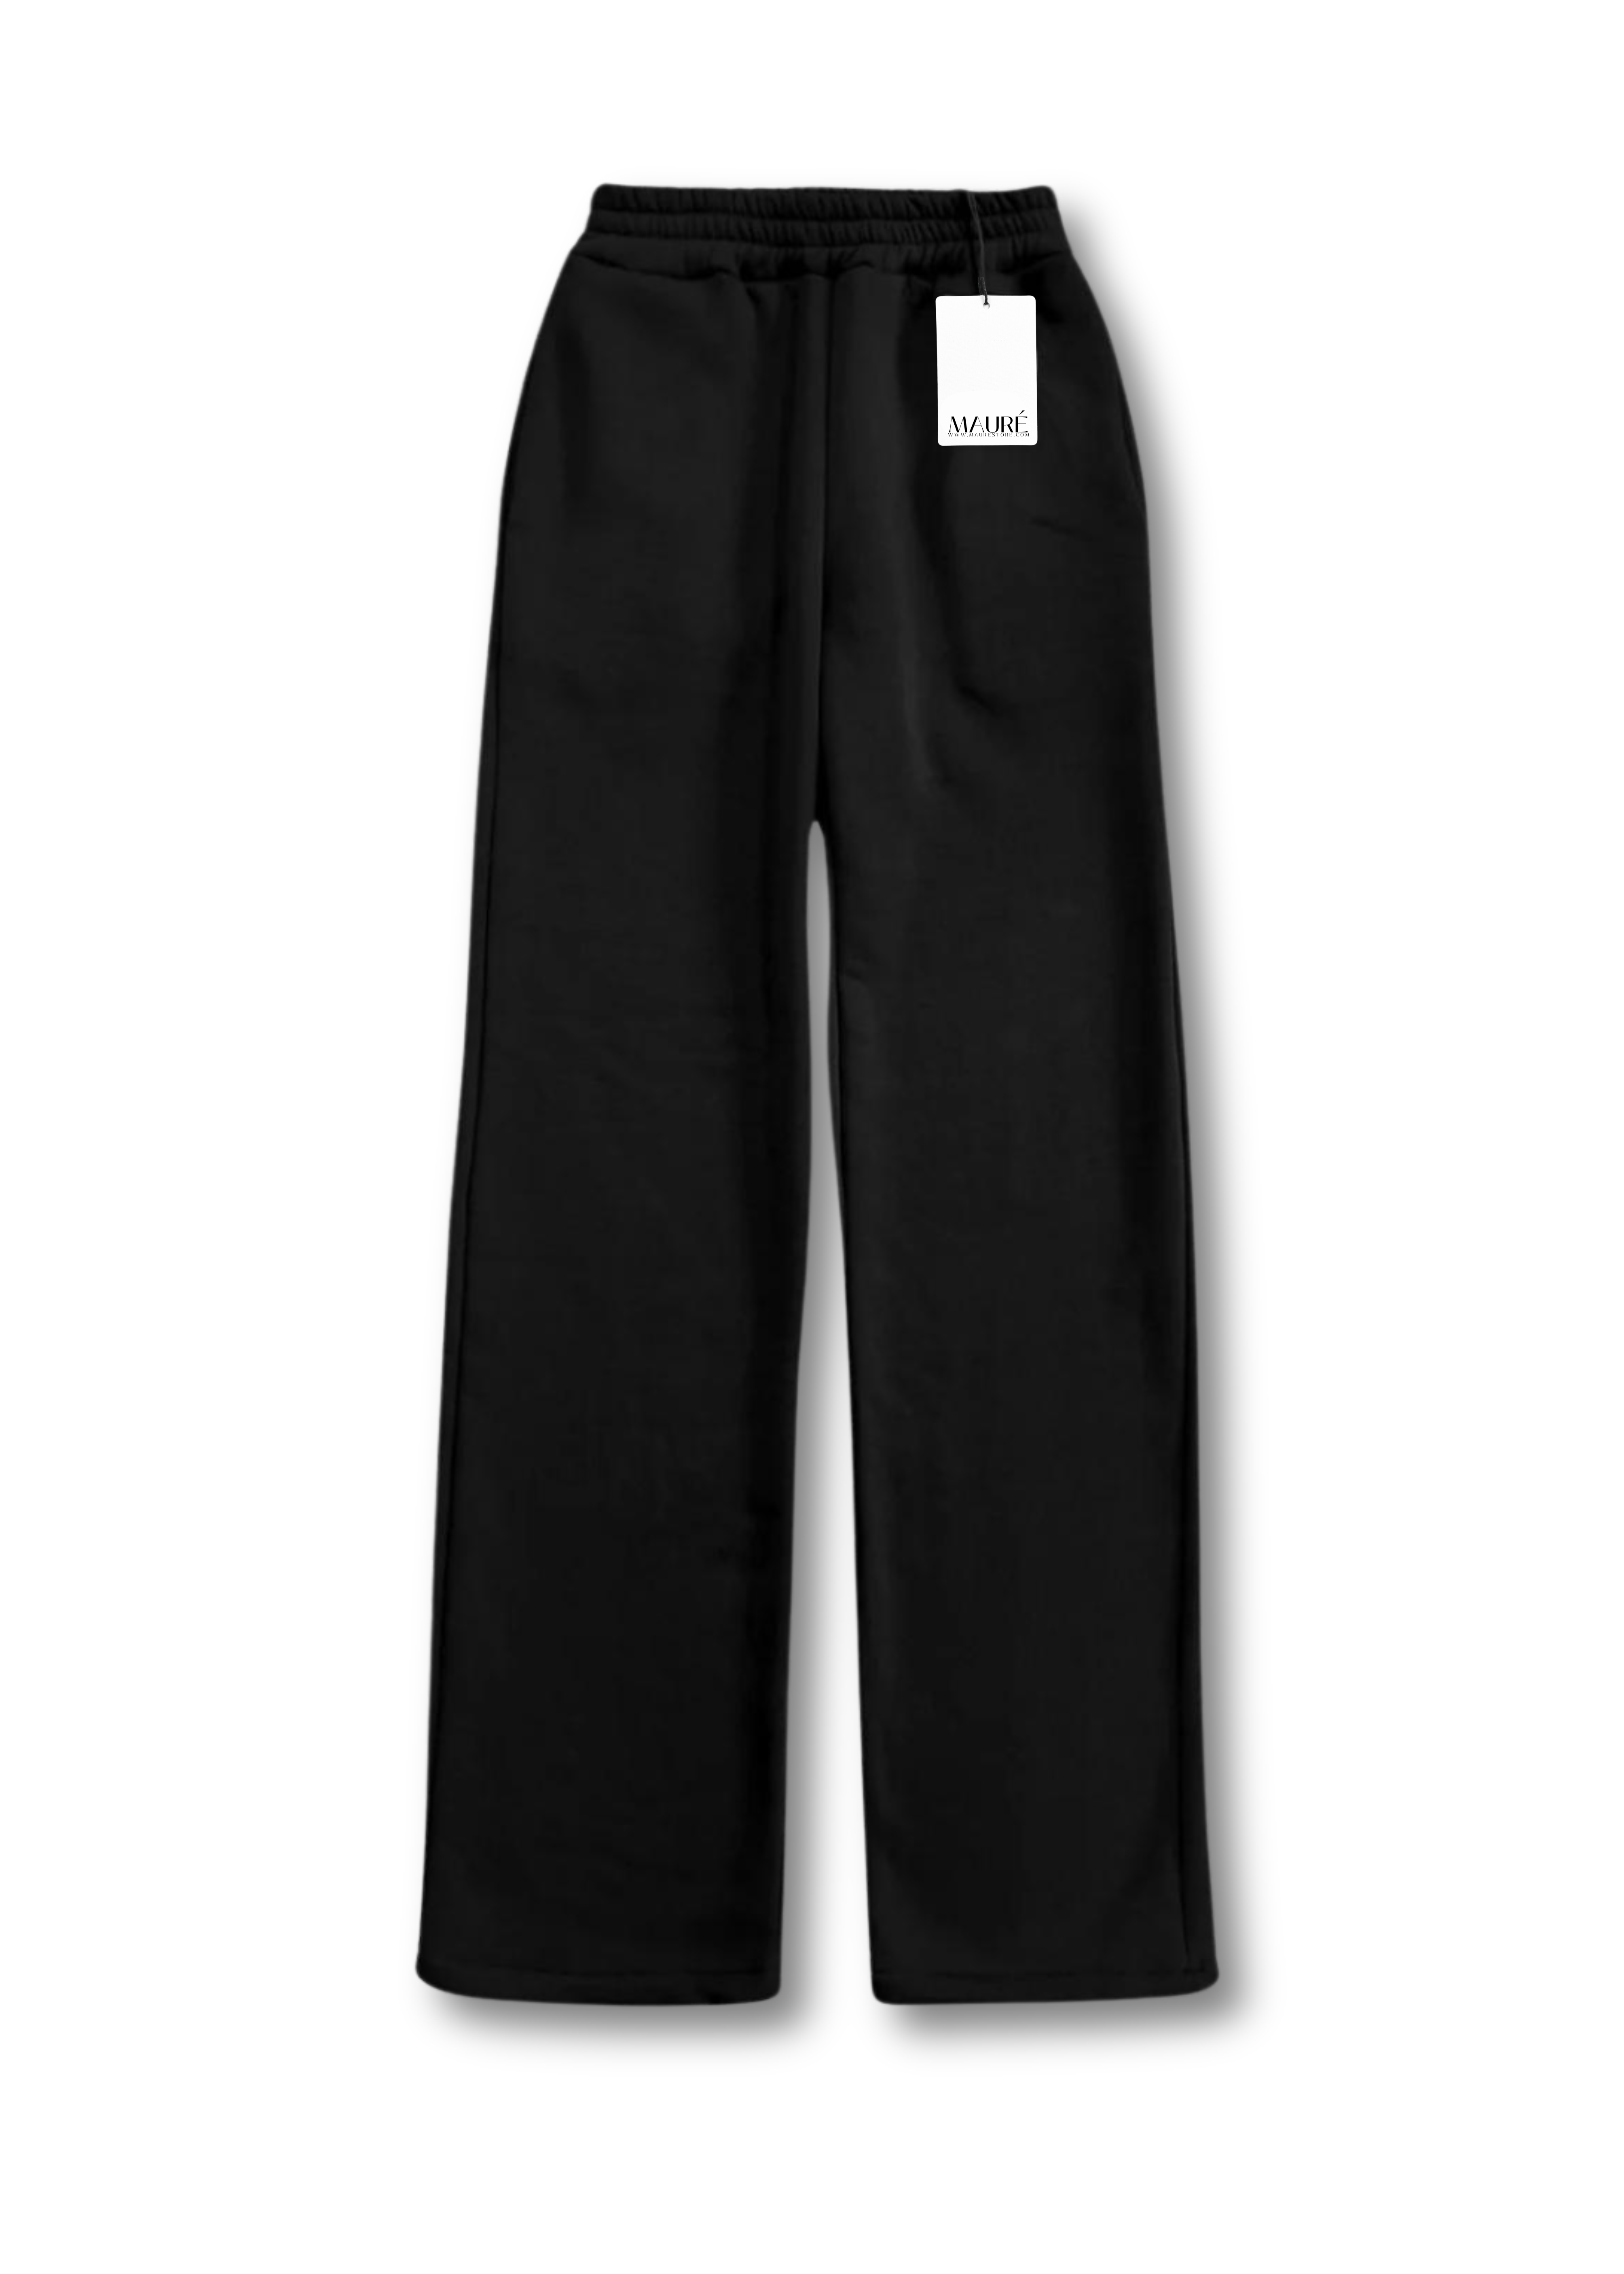 Pantalon de jogging taille haute noir (TALL)